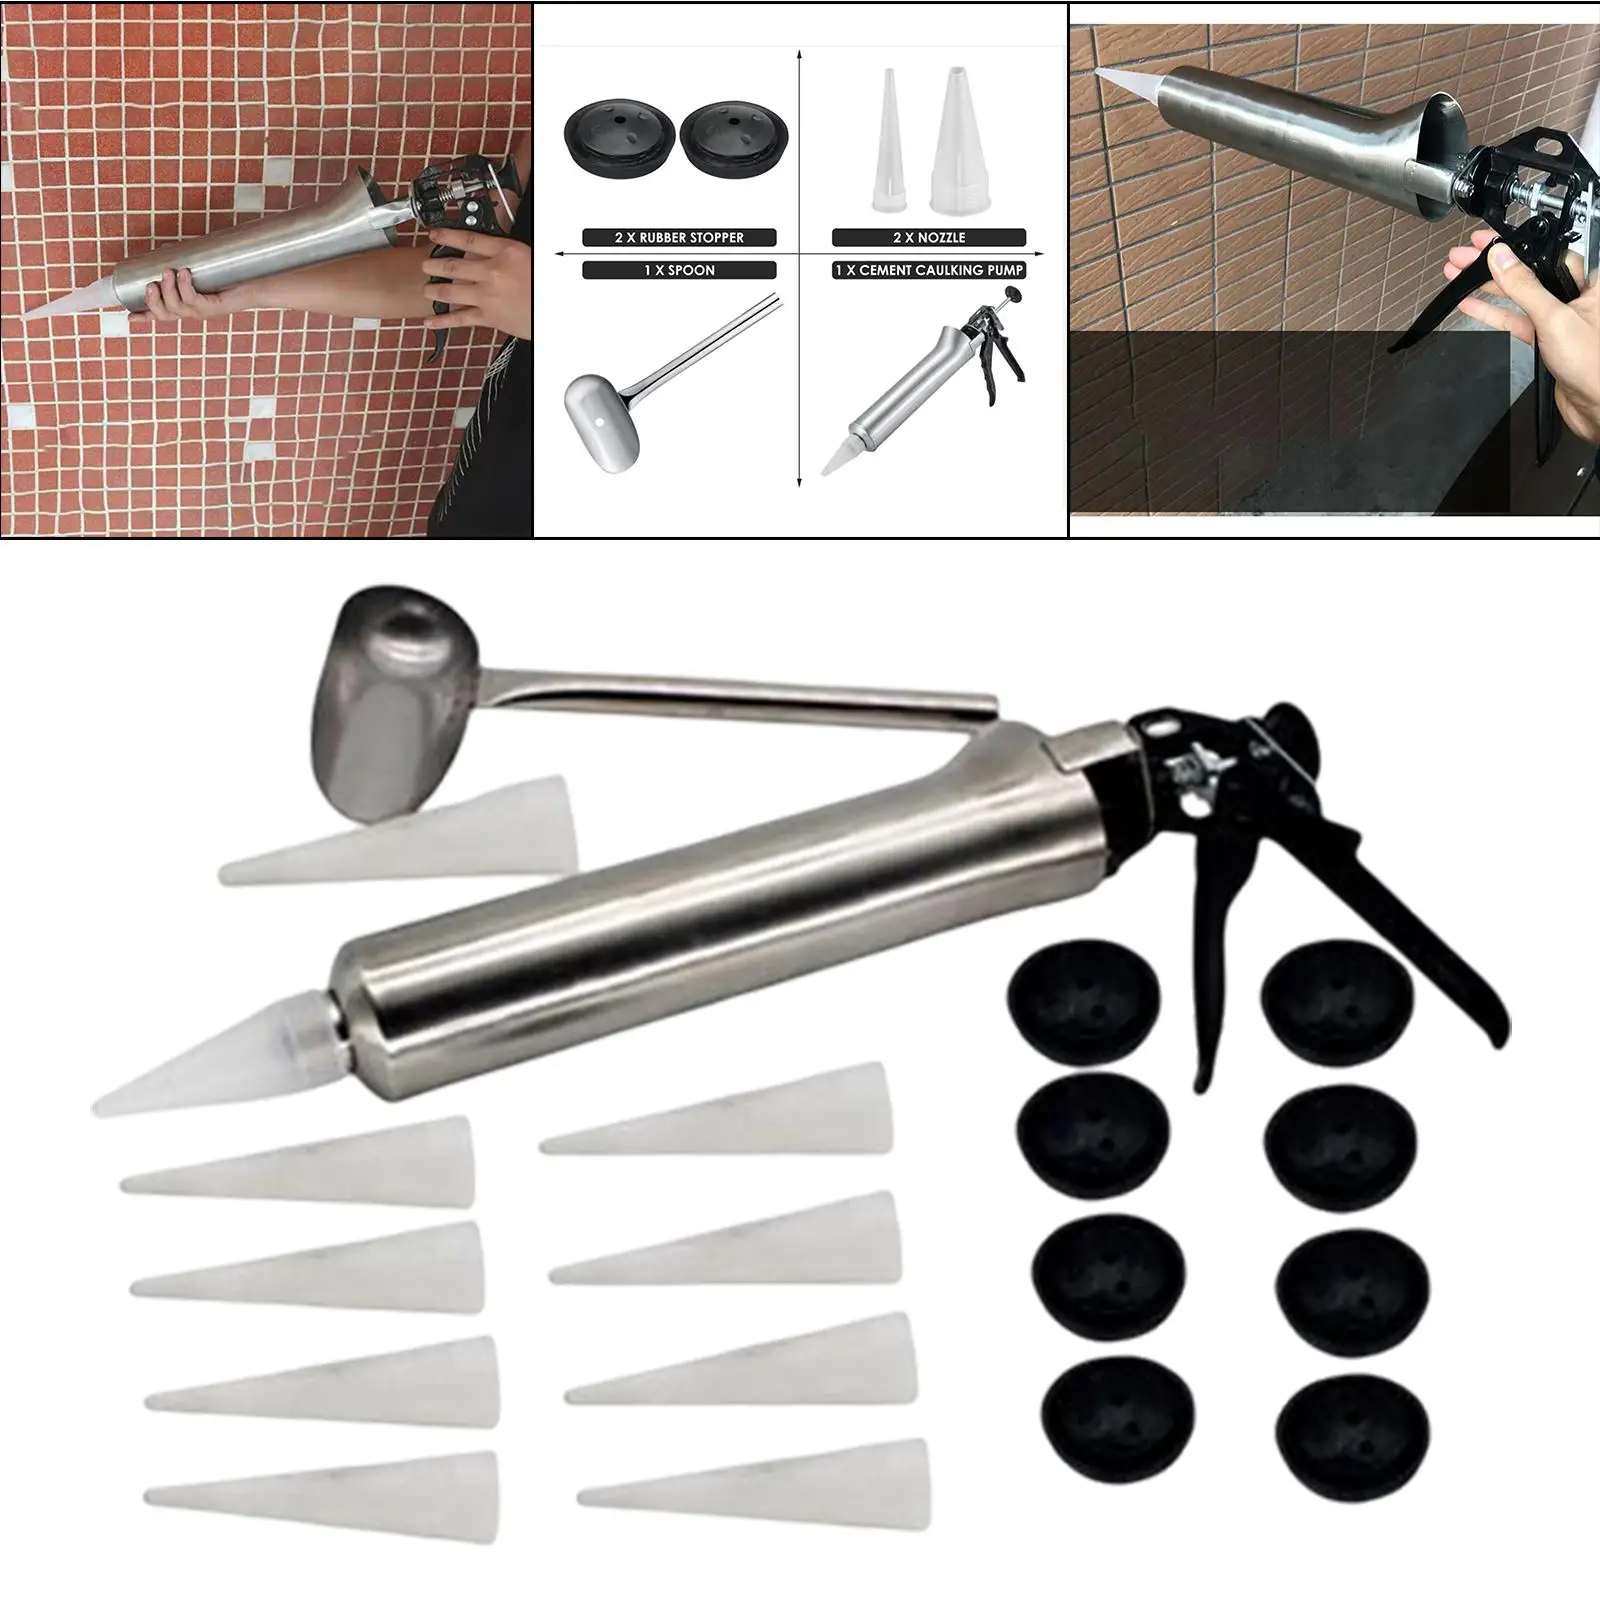 Stainless Steel Caulking Gun Sealer Caulking Tool Grouting Gun Tool Sprayer for Fill Terraces, Floors, Floor Tiles and Walls